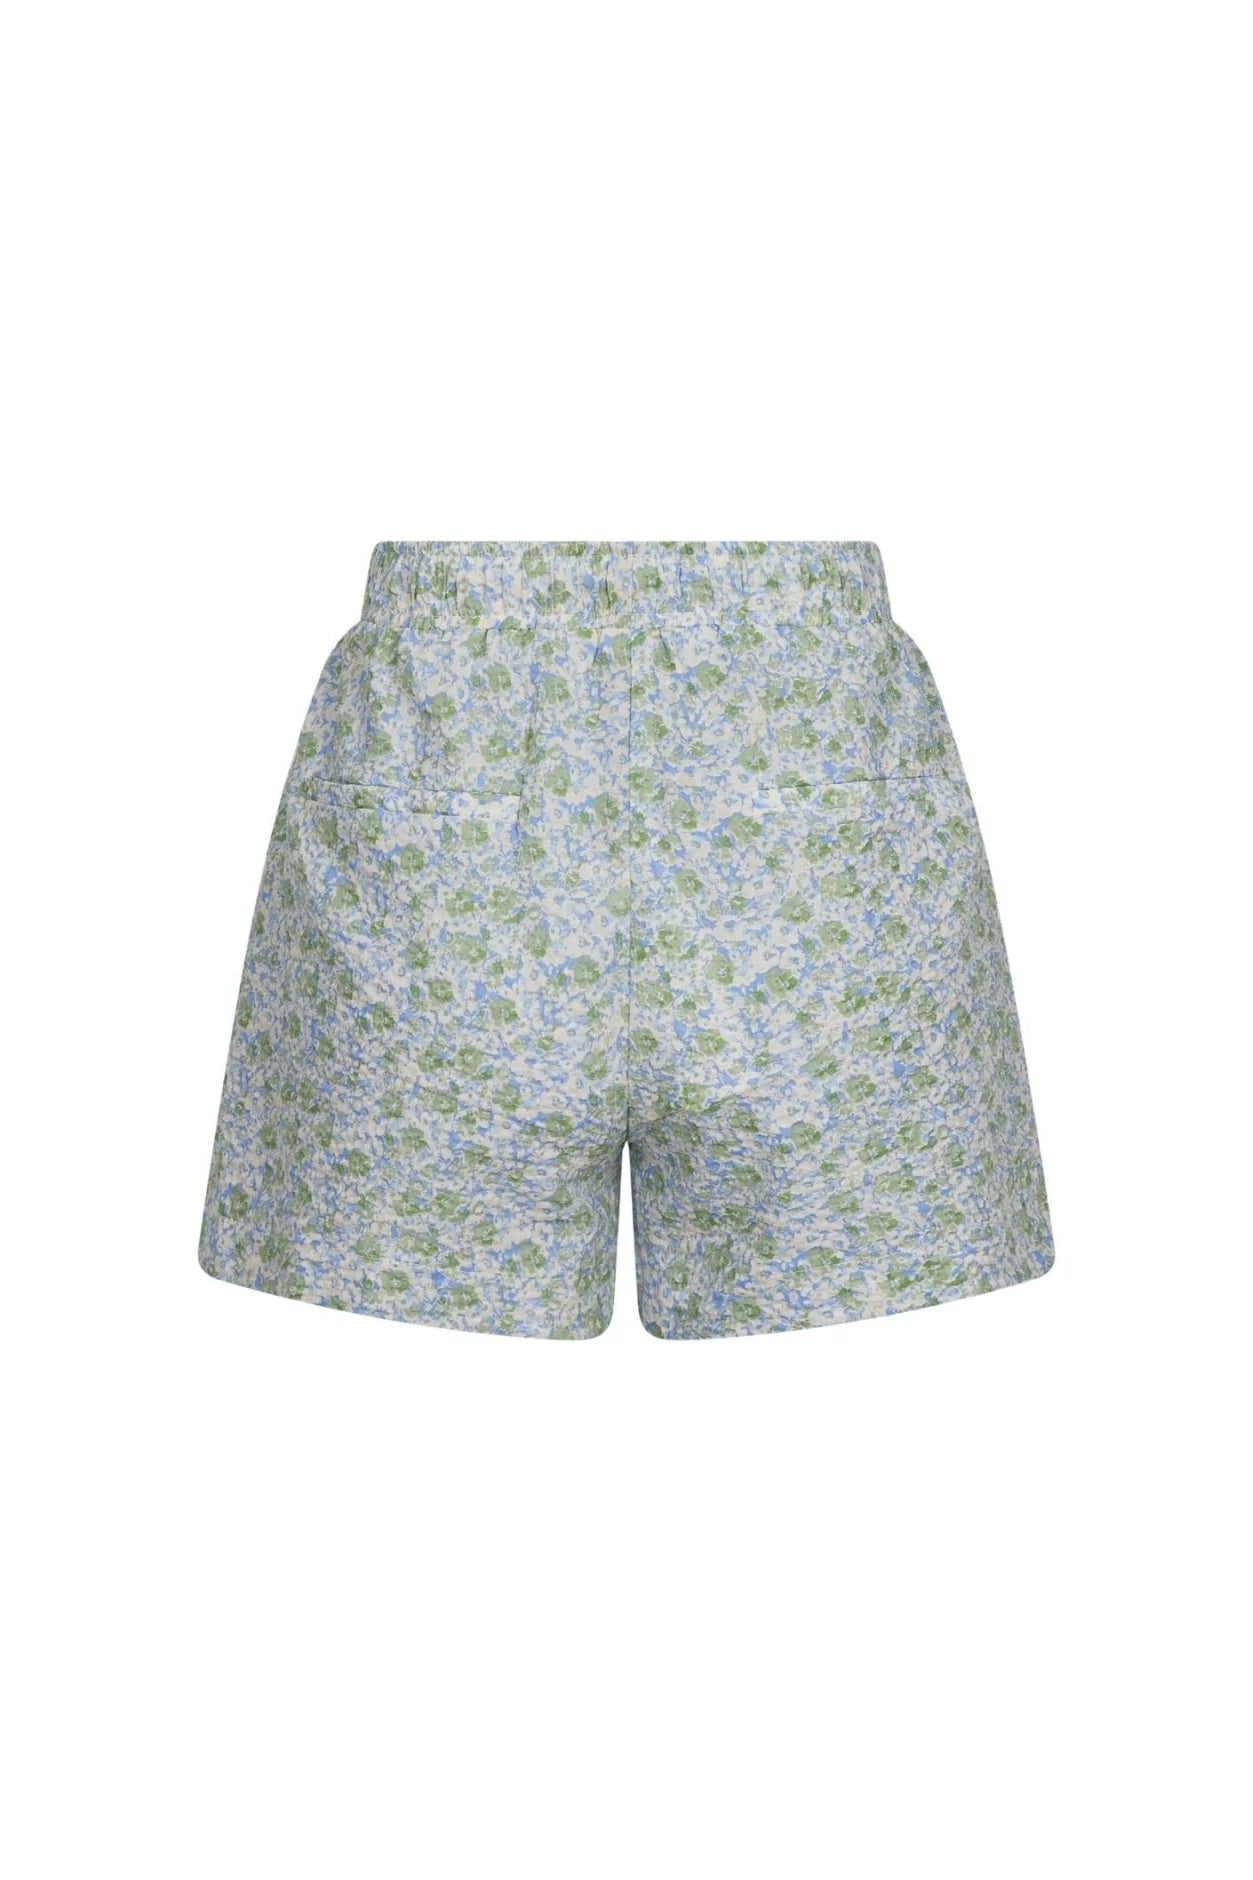 Abbigail Ocean Breeze Shorts - Shorts